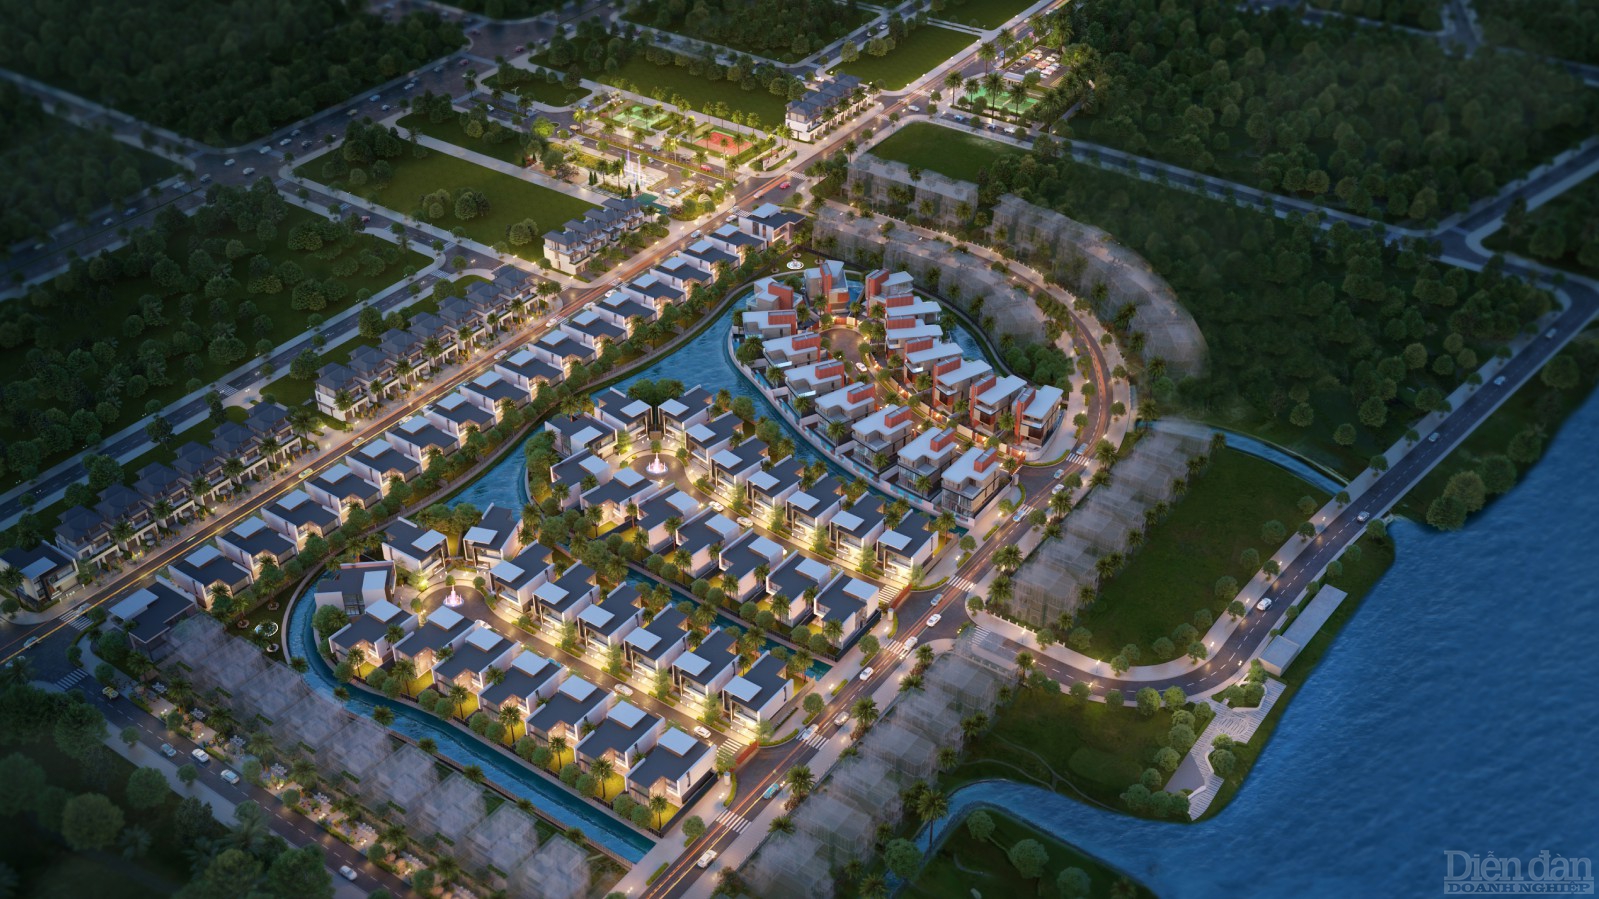 Siêu dự án biệt thự Đảo Ngọc với kiến trúc tương lai Regal Victoria sắp được Đất Xanh Miền Trung chính thức ra mắt đến giới đầu tư trong tháng 11.2021.